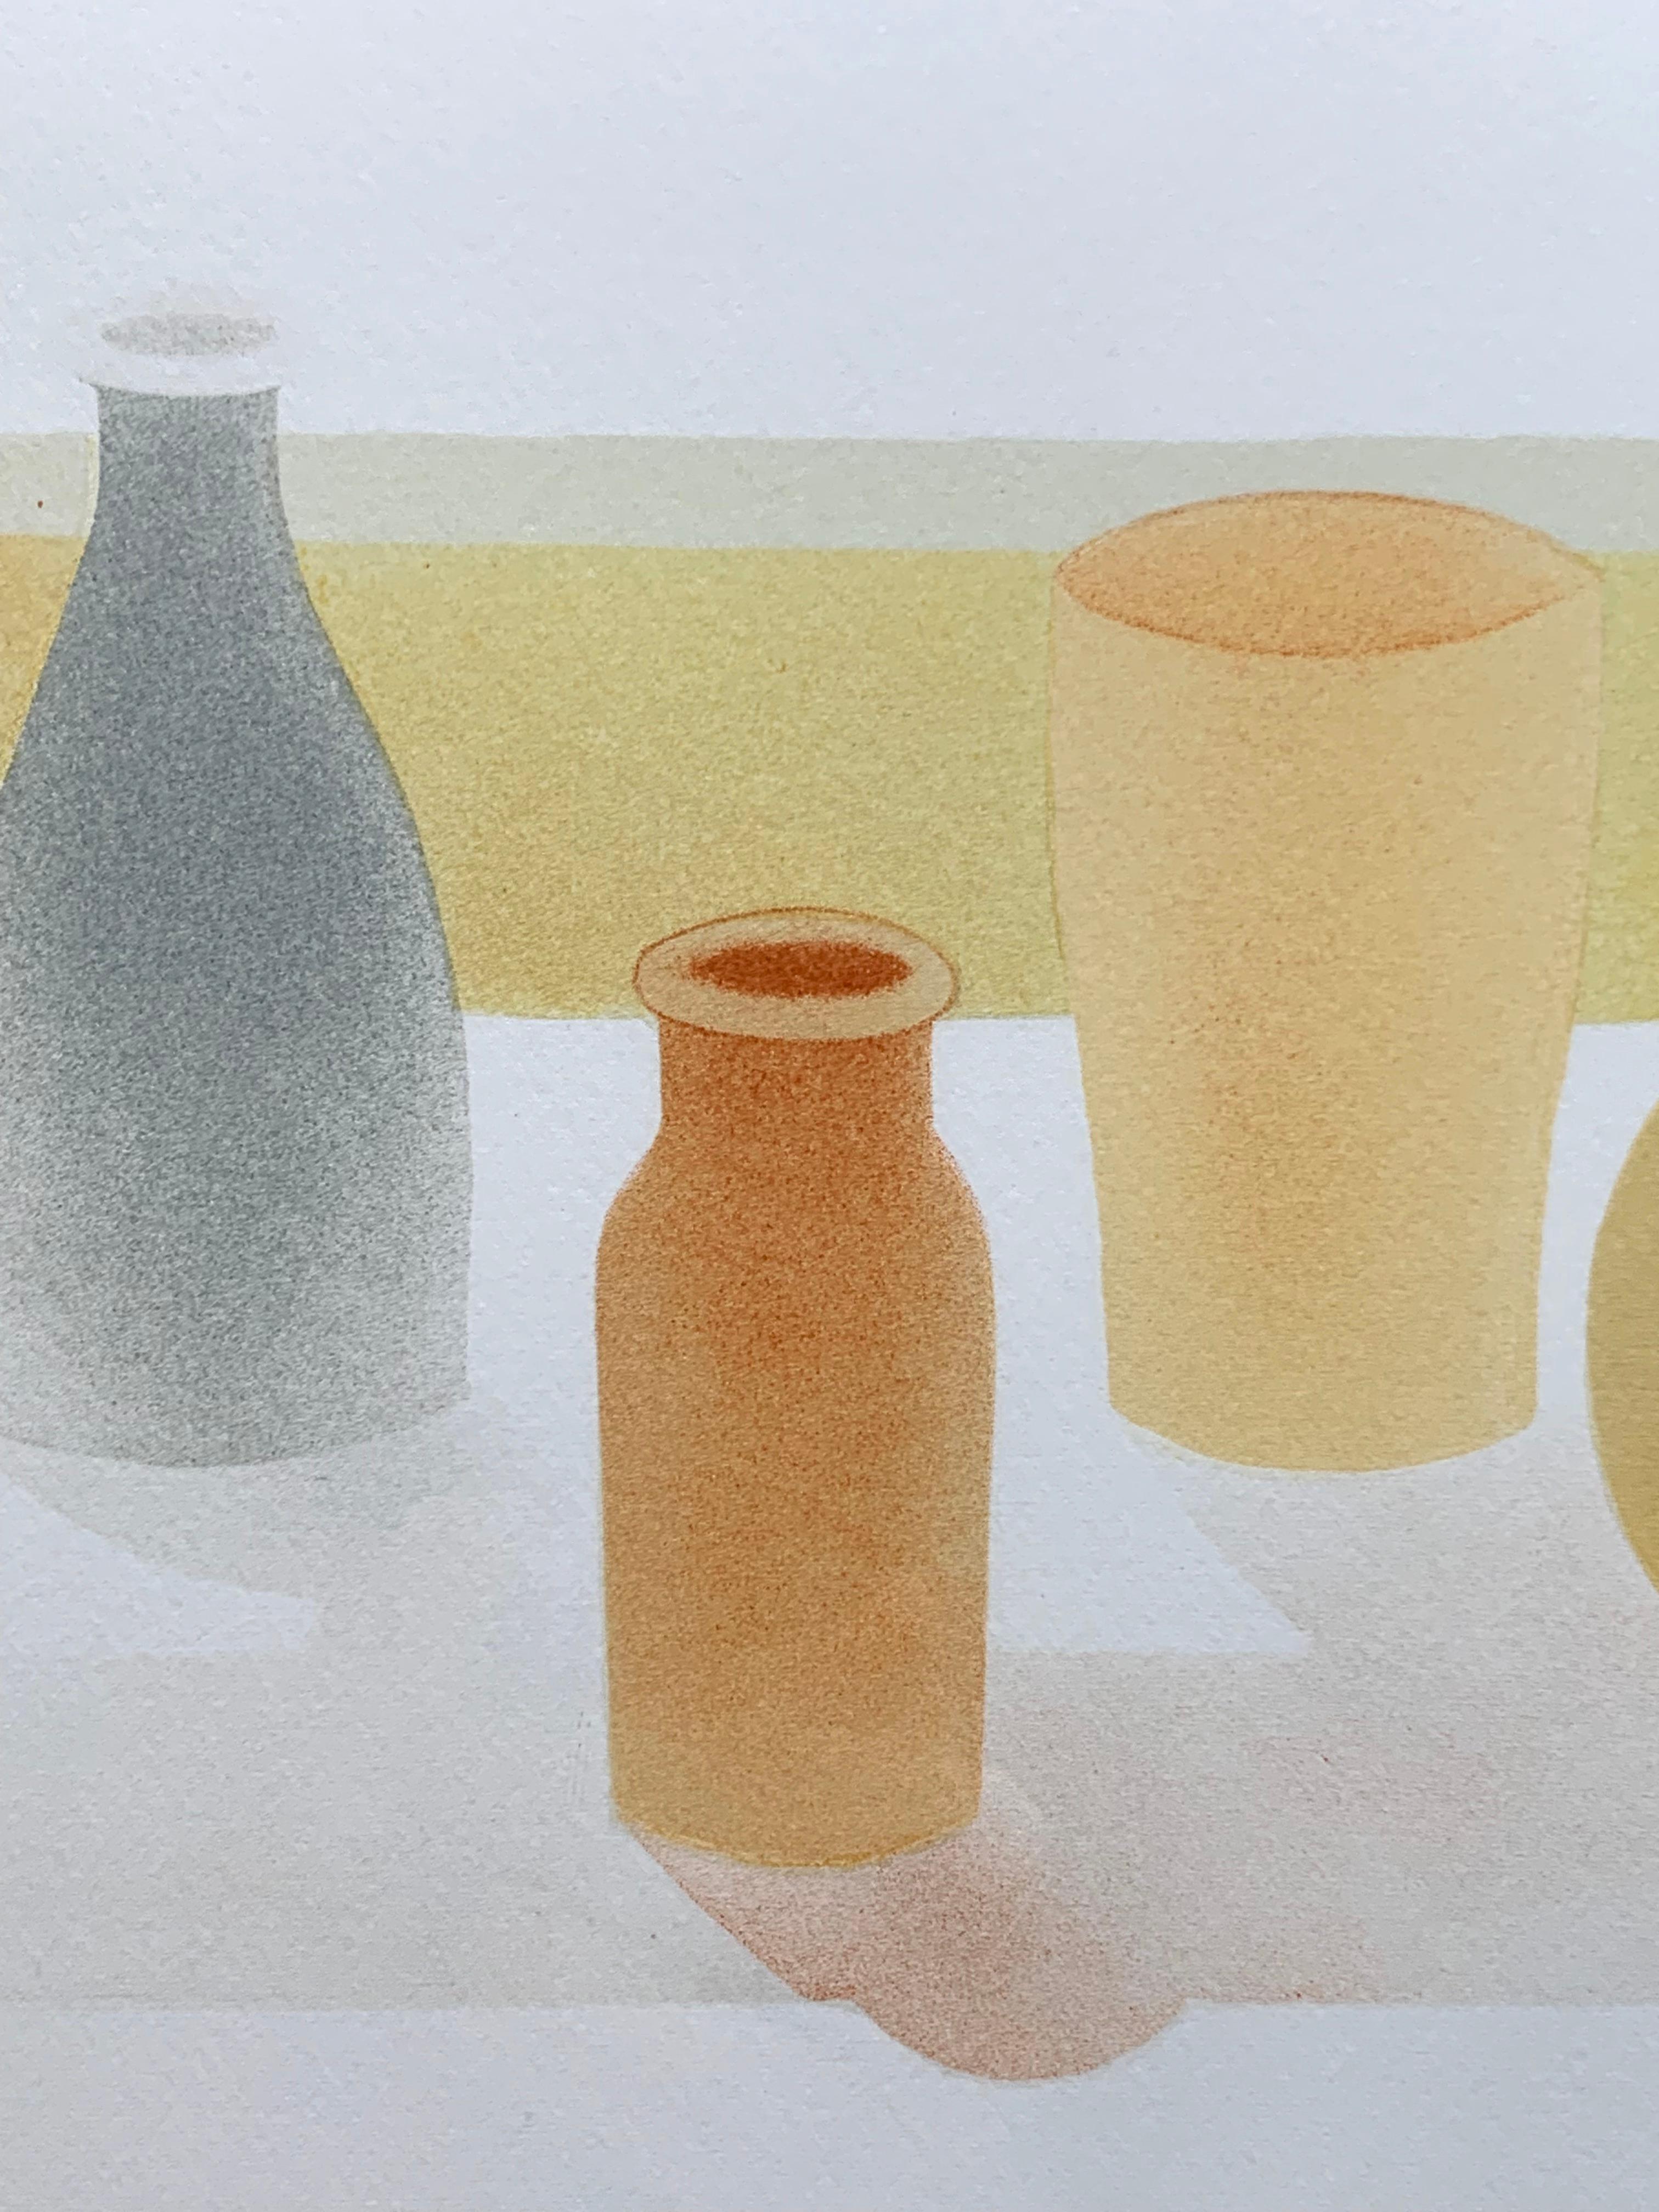 Still Life with Greek Vase - Realist Print by Elizabeth Osborne